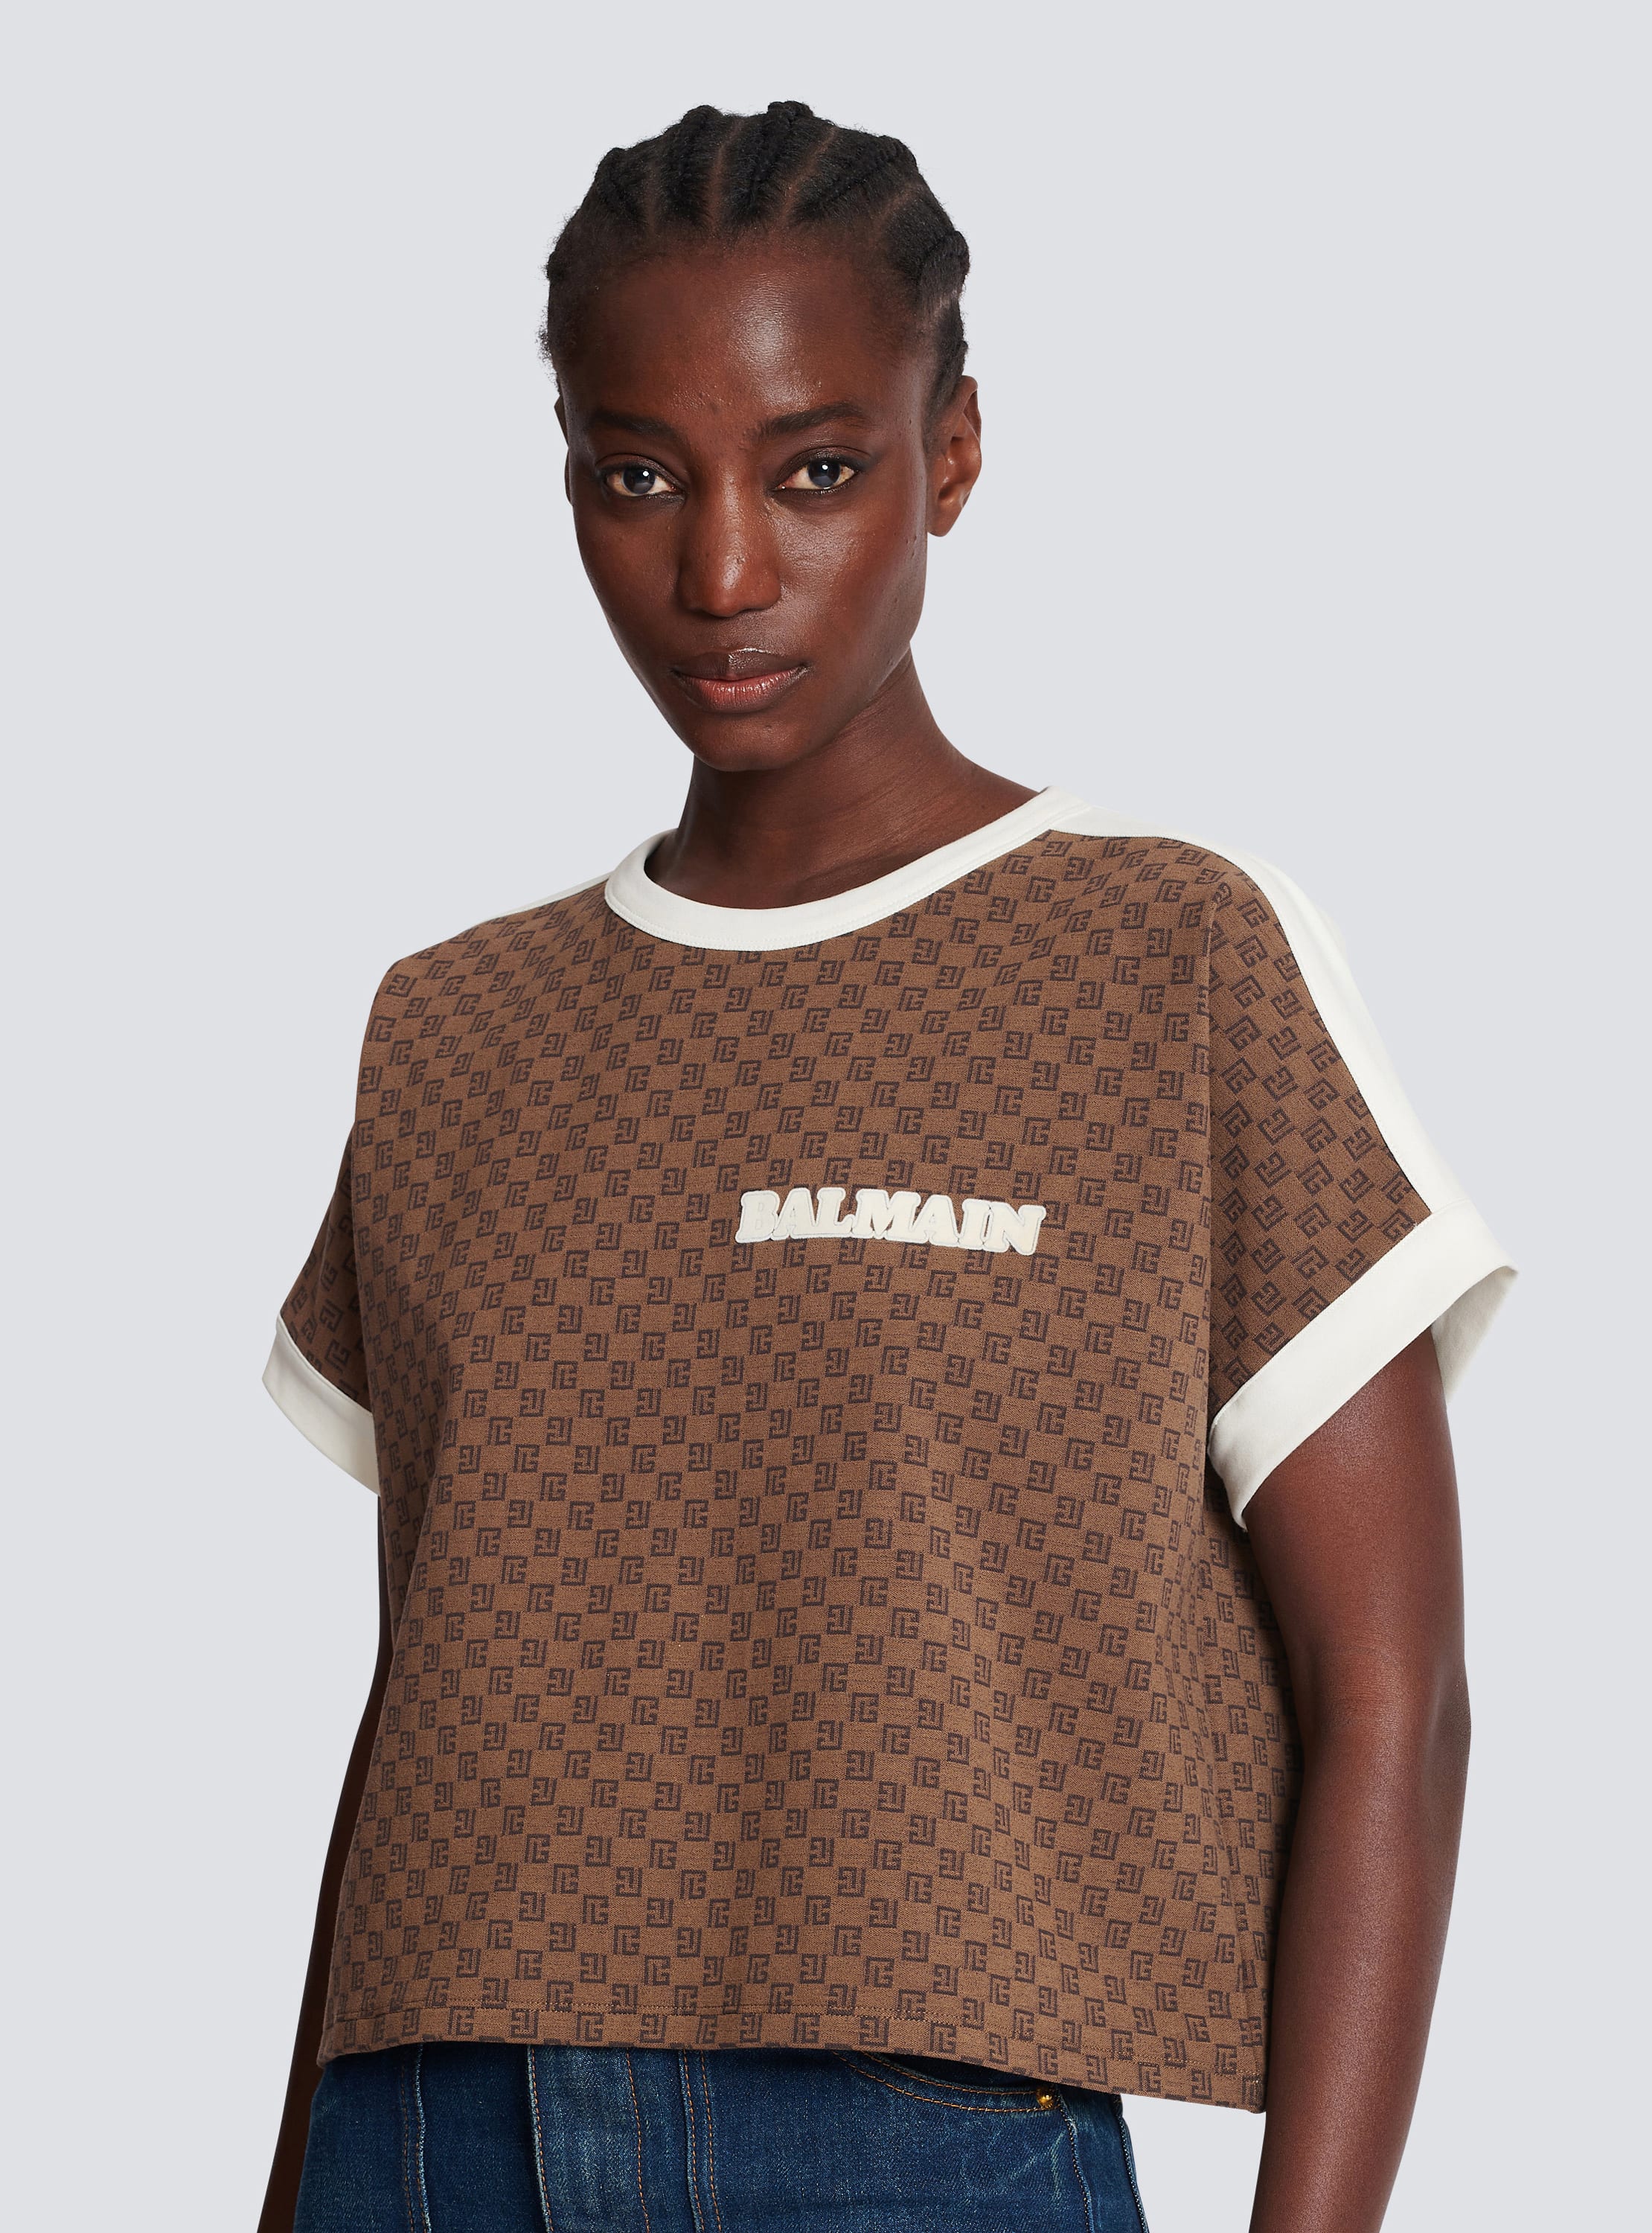 Balmain Denim Shirt with Jacquard Monogram